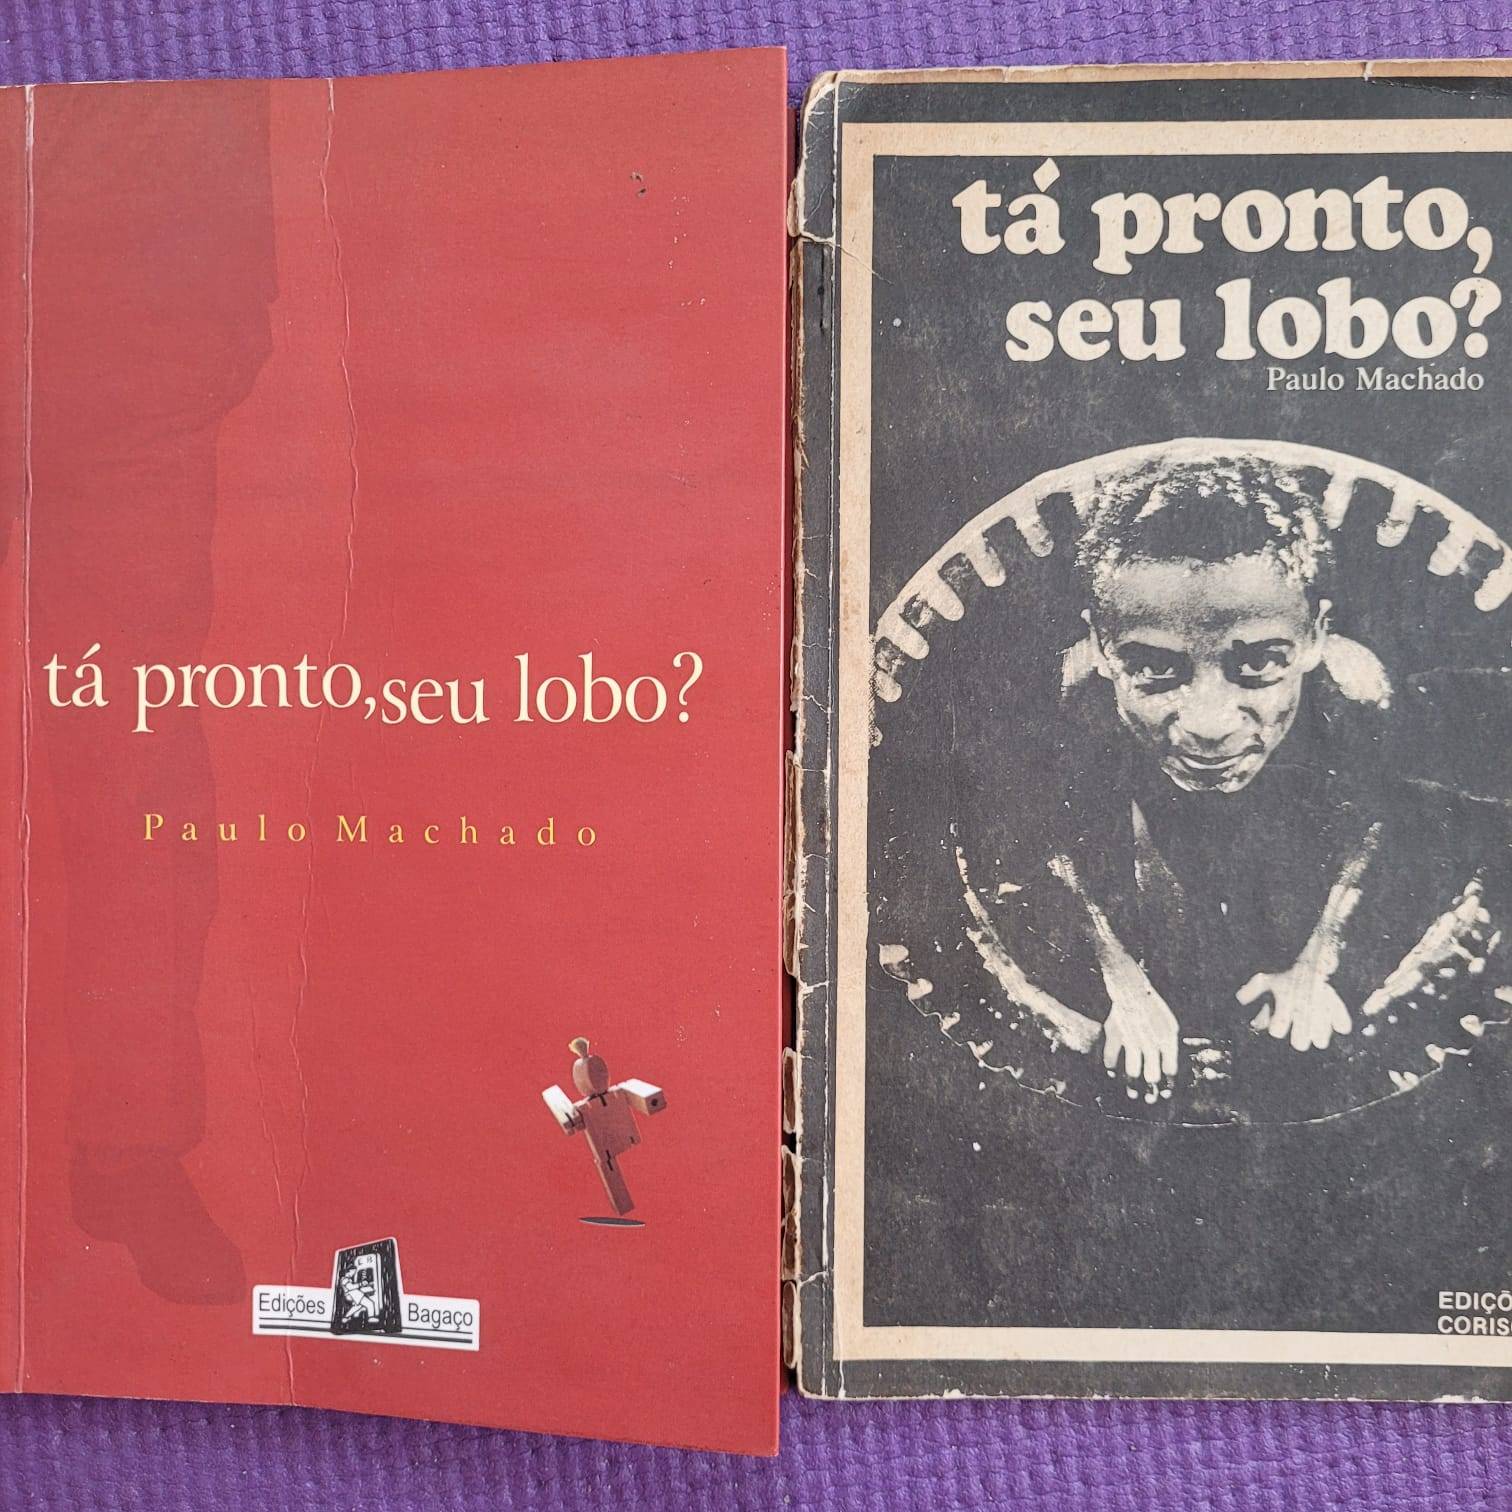 Foto do livro Tá pronto, seu lobo? de Paulo Machado. Sobre um tecido roxo há a primeira e a segunda edição do livro.